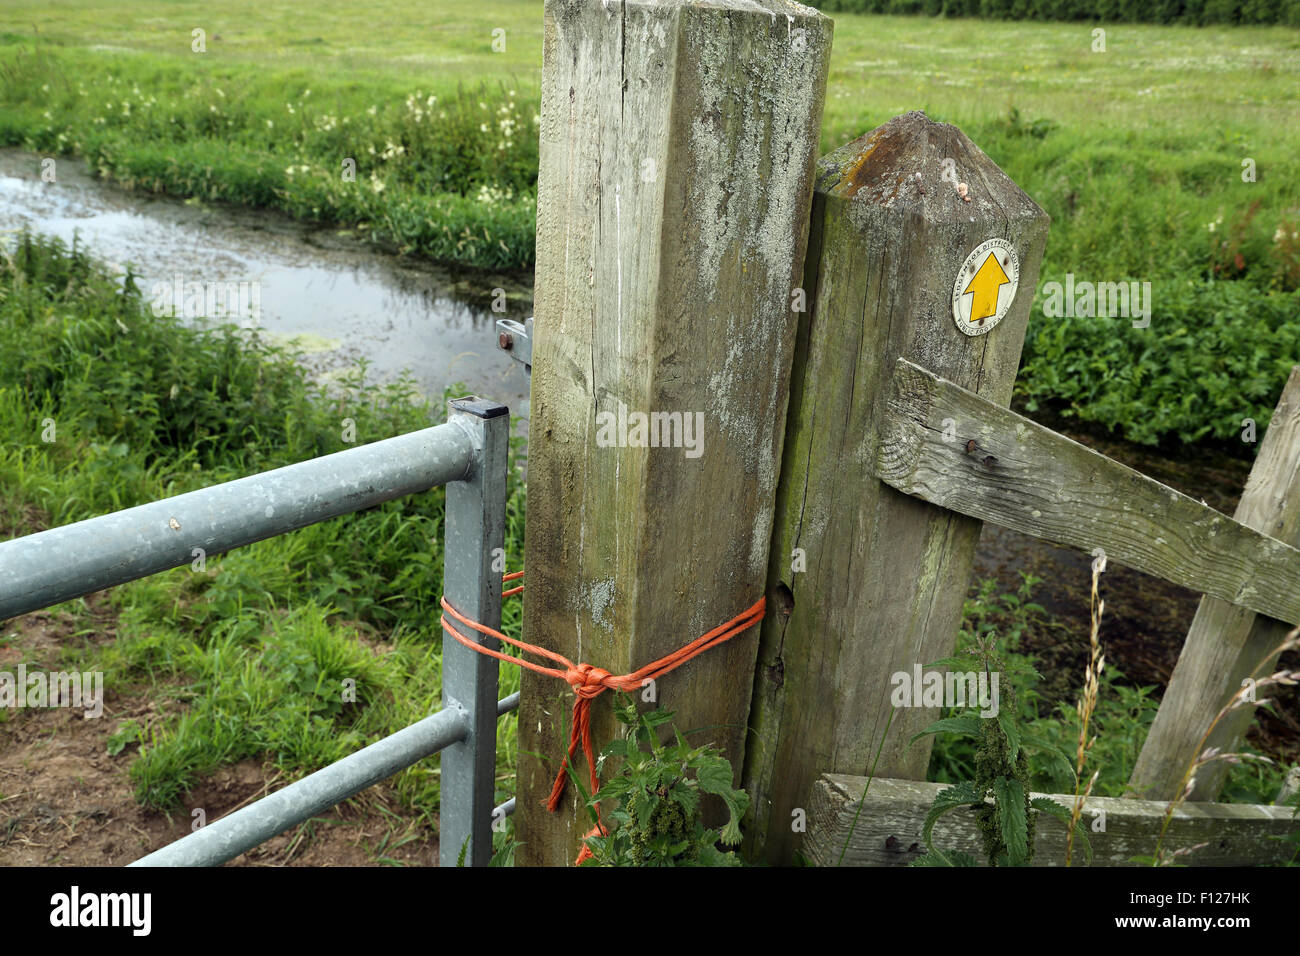 Chiaramente un sentiero bloccato da qualcuno, presumibilmente l'agricoltore, la legatura forte corda arancione intorno al gate e gatepost. Foto Stock